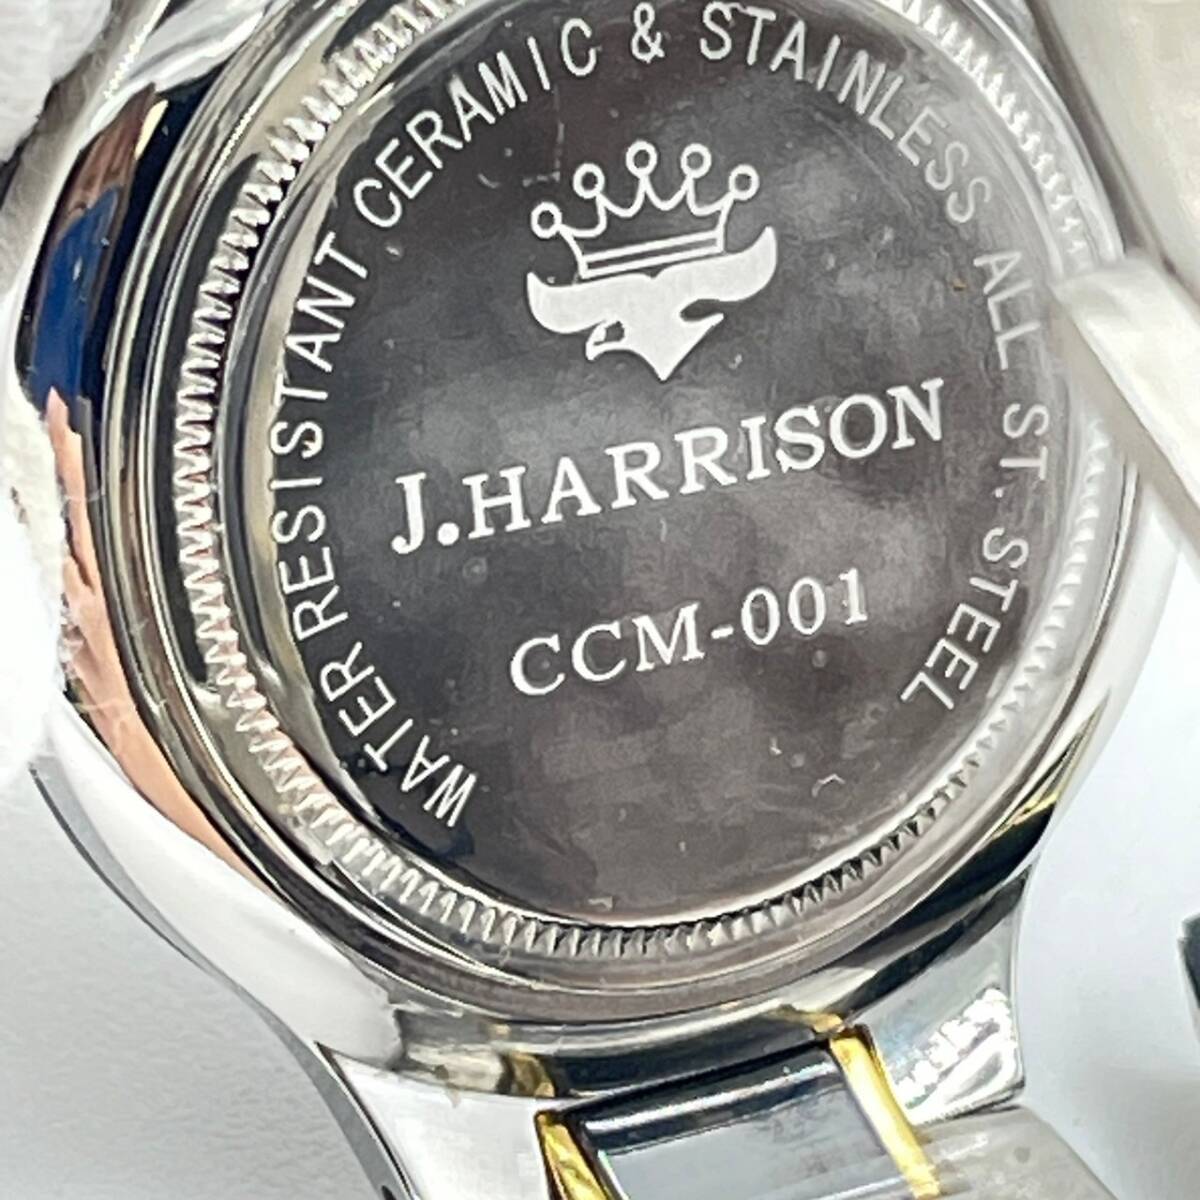 J.HARRISON John - lison мужские наручные часы серебряный чёрный бриллиант Monde CCM-001 текущее состояние товар 